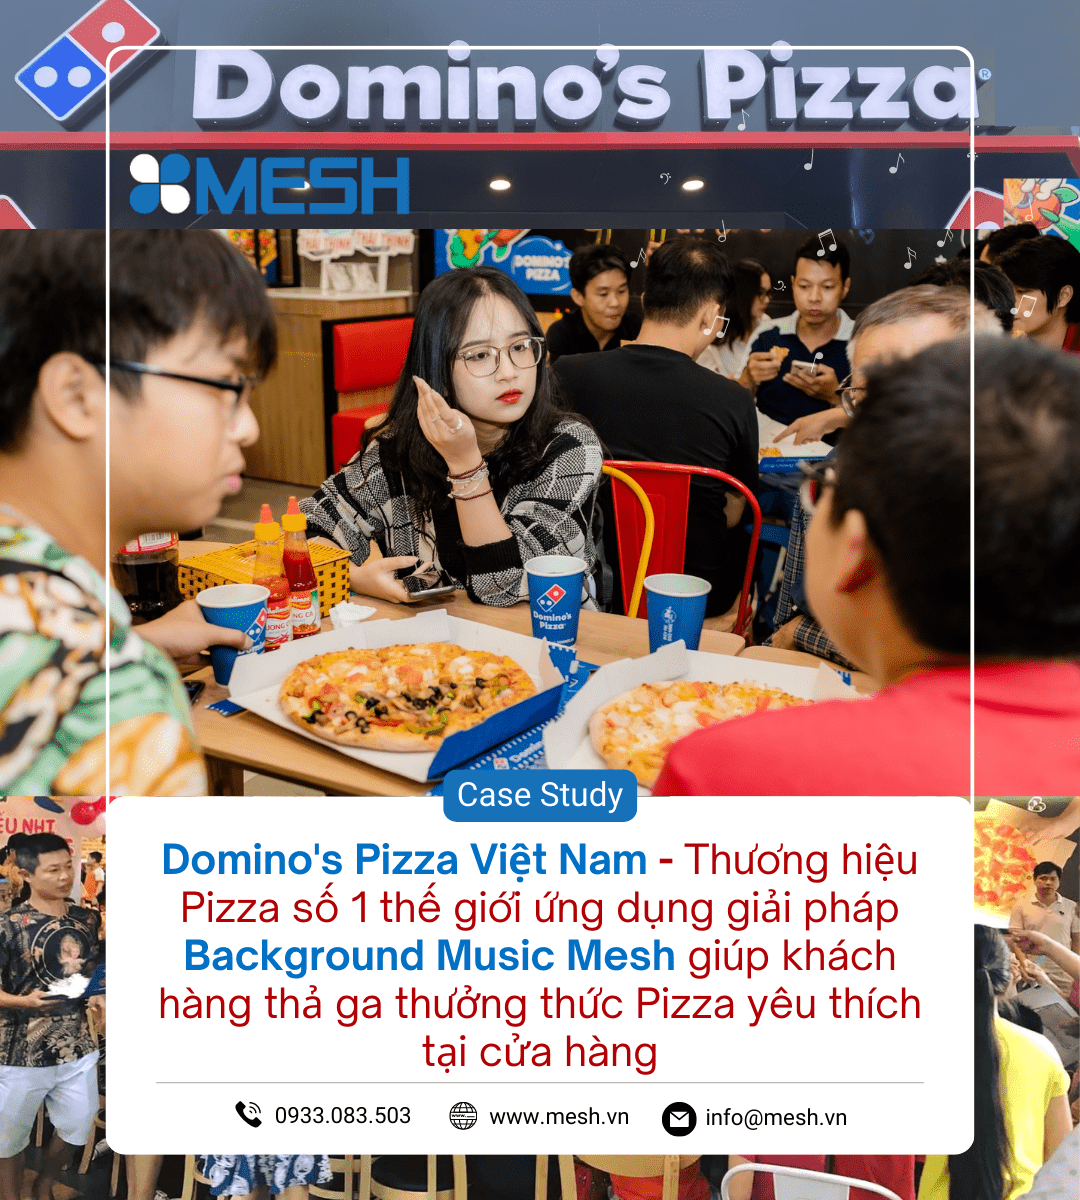 Domino’s Pizza Việt Nam – Thương hiệu Pizza số 1 thế giới ứng dụng giải pháp Background Music Mesh giúp khách hàng thả ga thưởng thức Pizza yêu thích tại cửa hàng